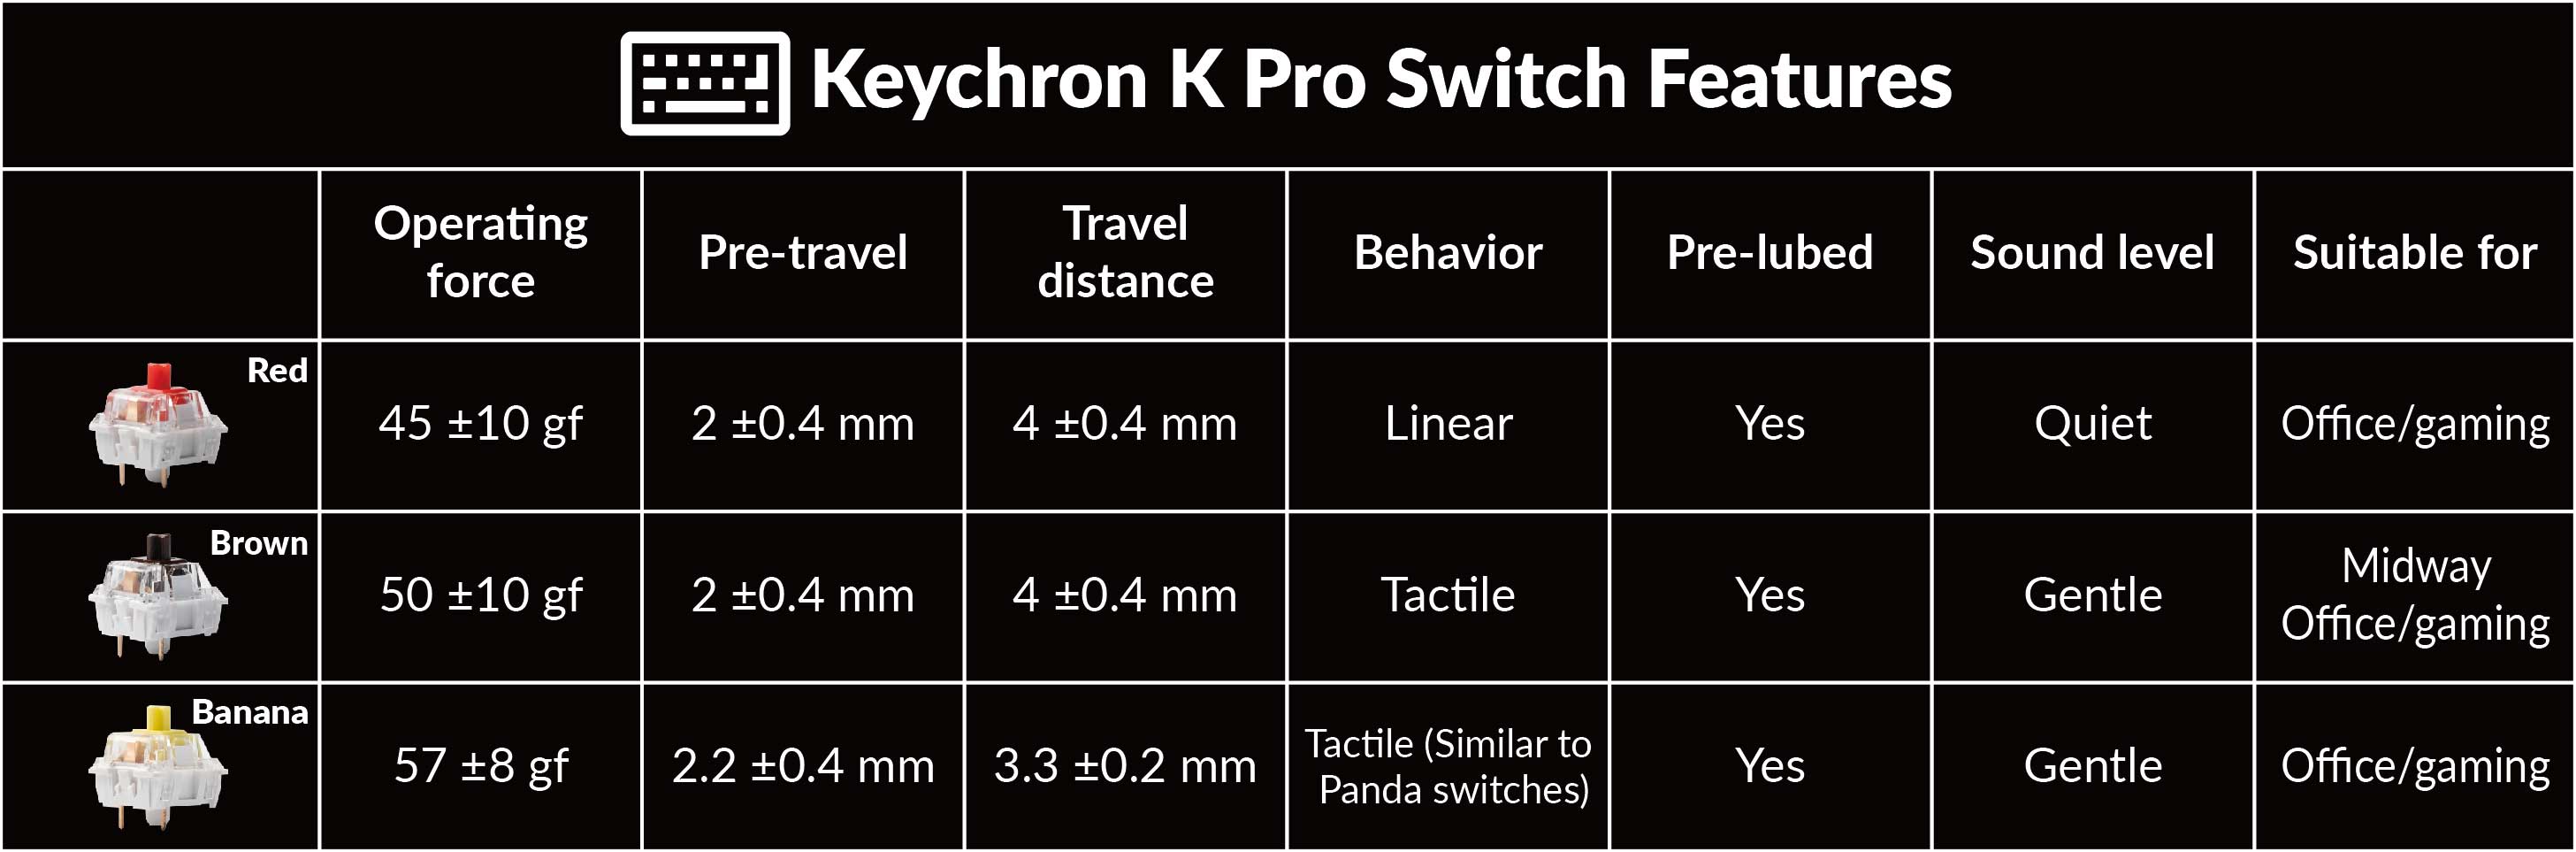 Keychron K Proスイッチの特徴